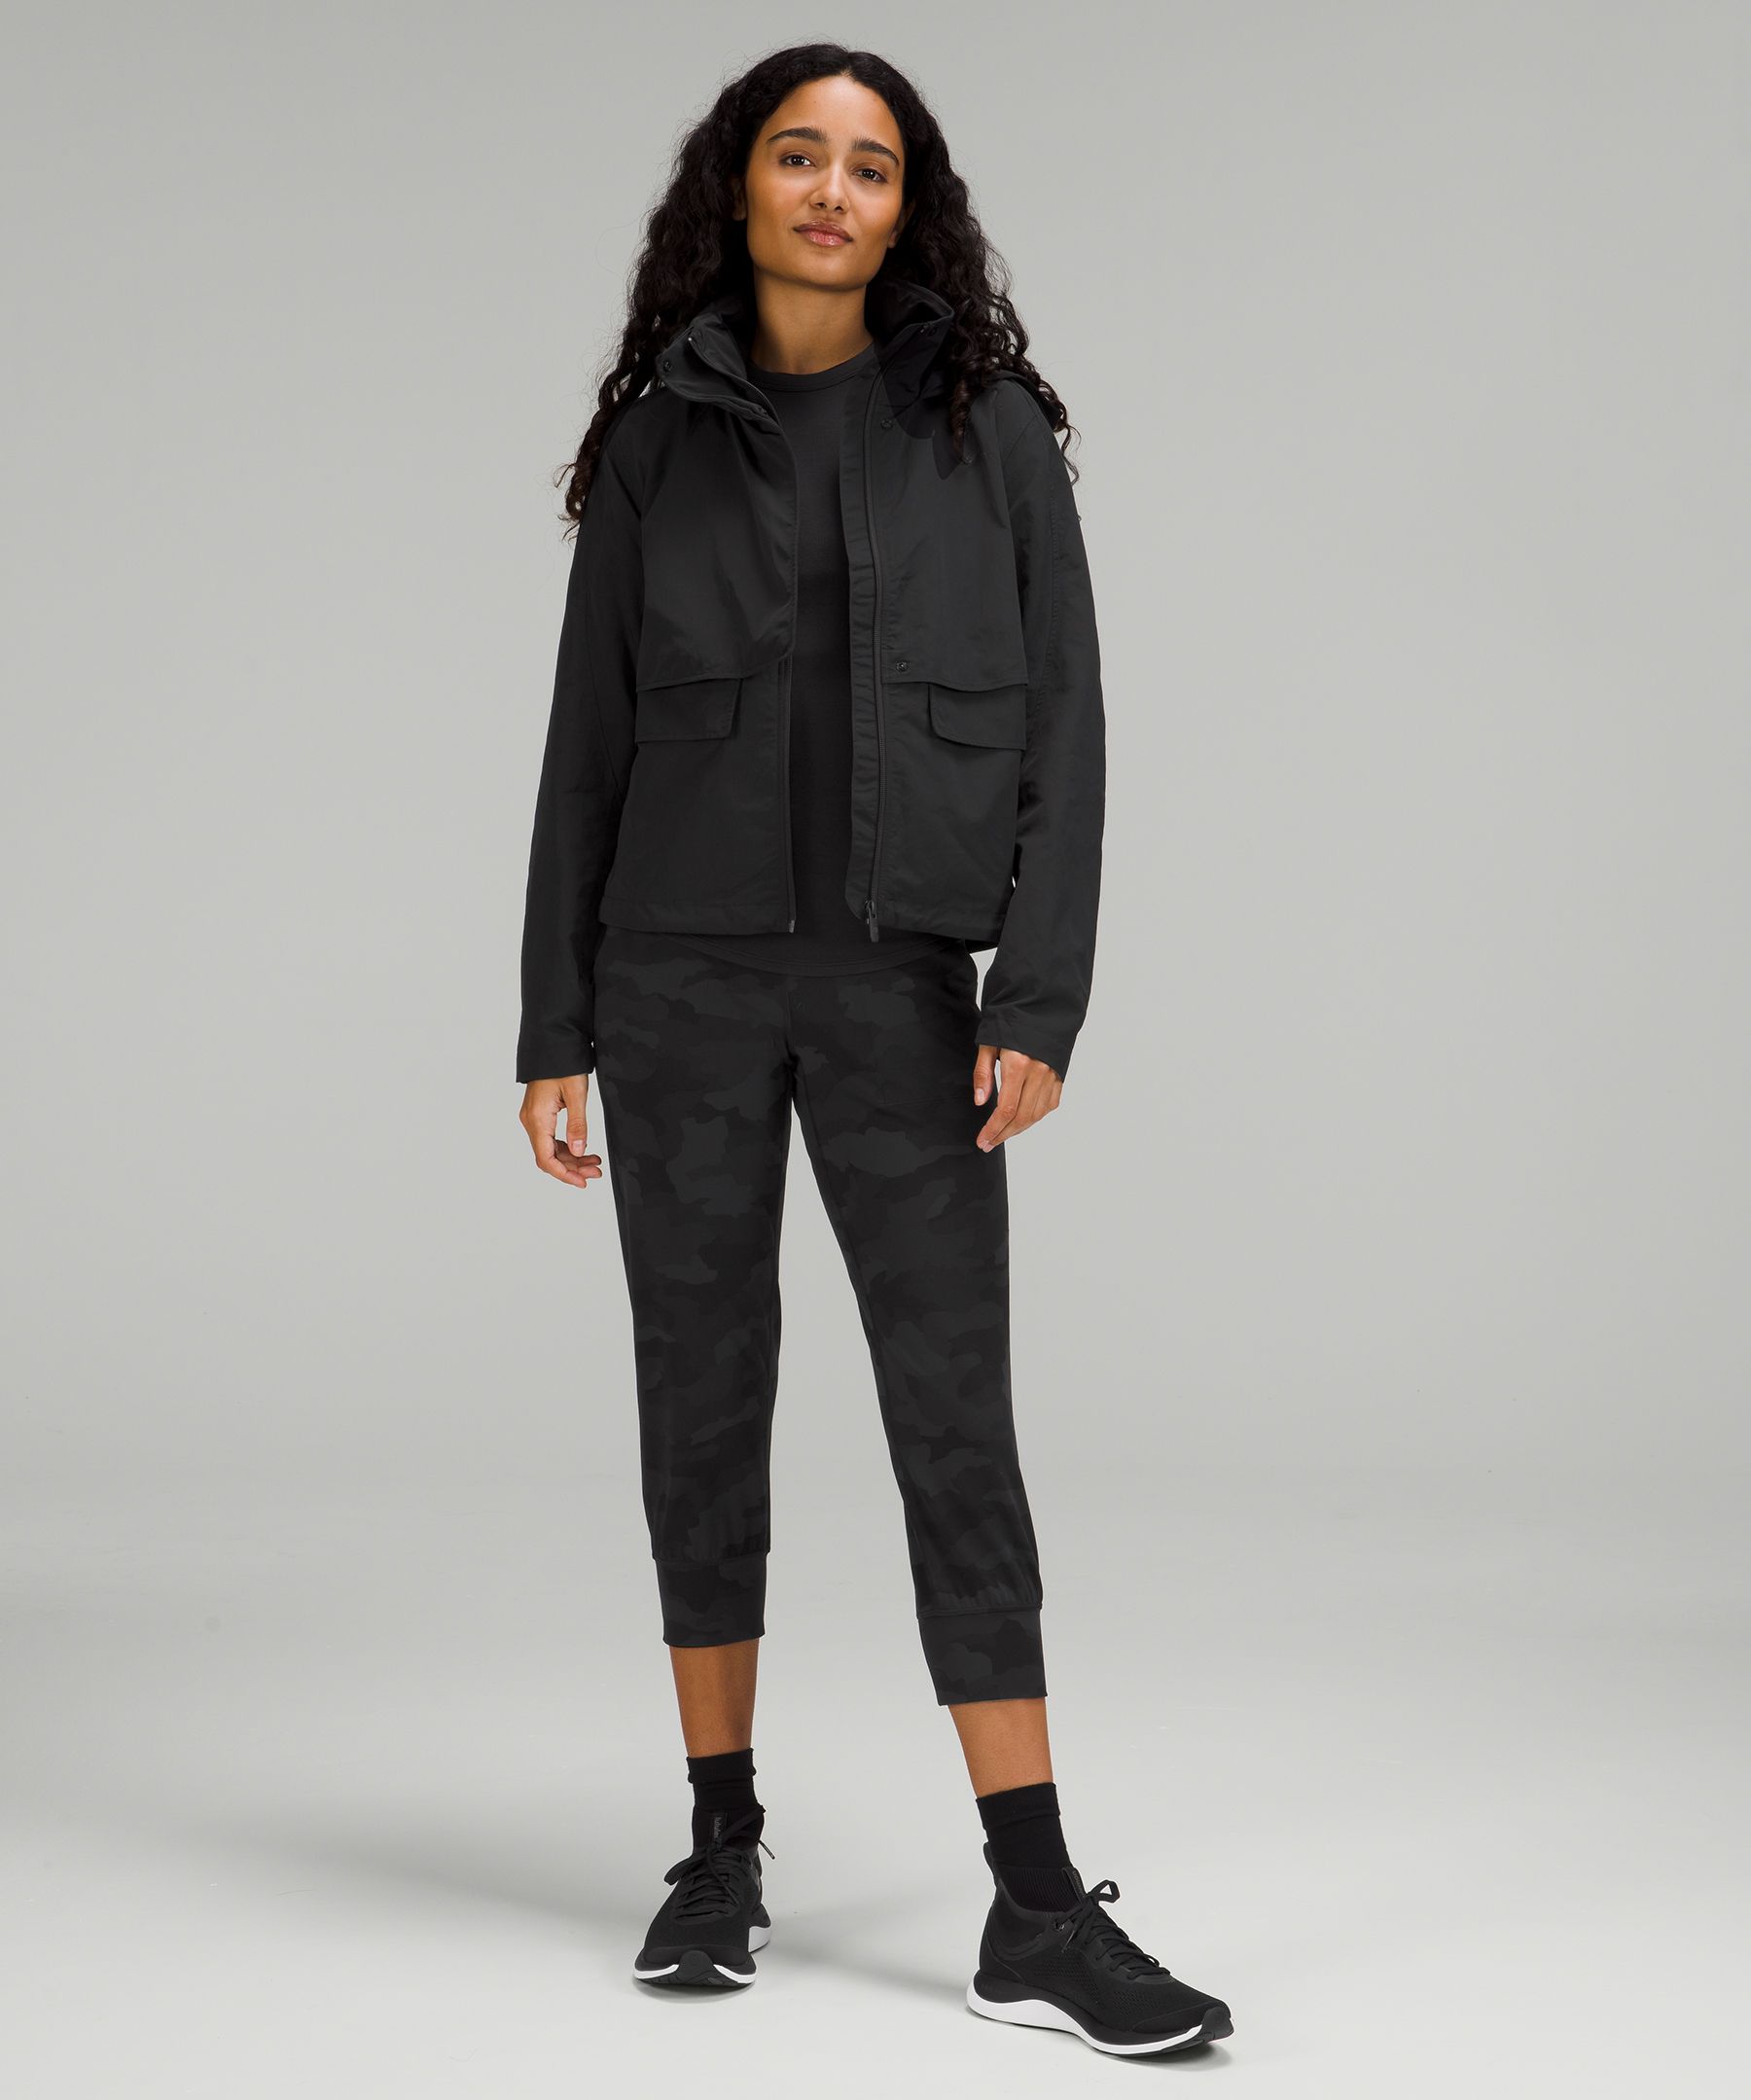 NWT Womens Lululemon Black Effortless Jacket Size 12